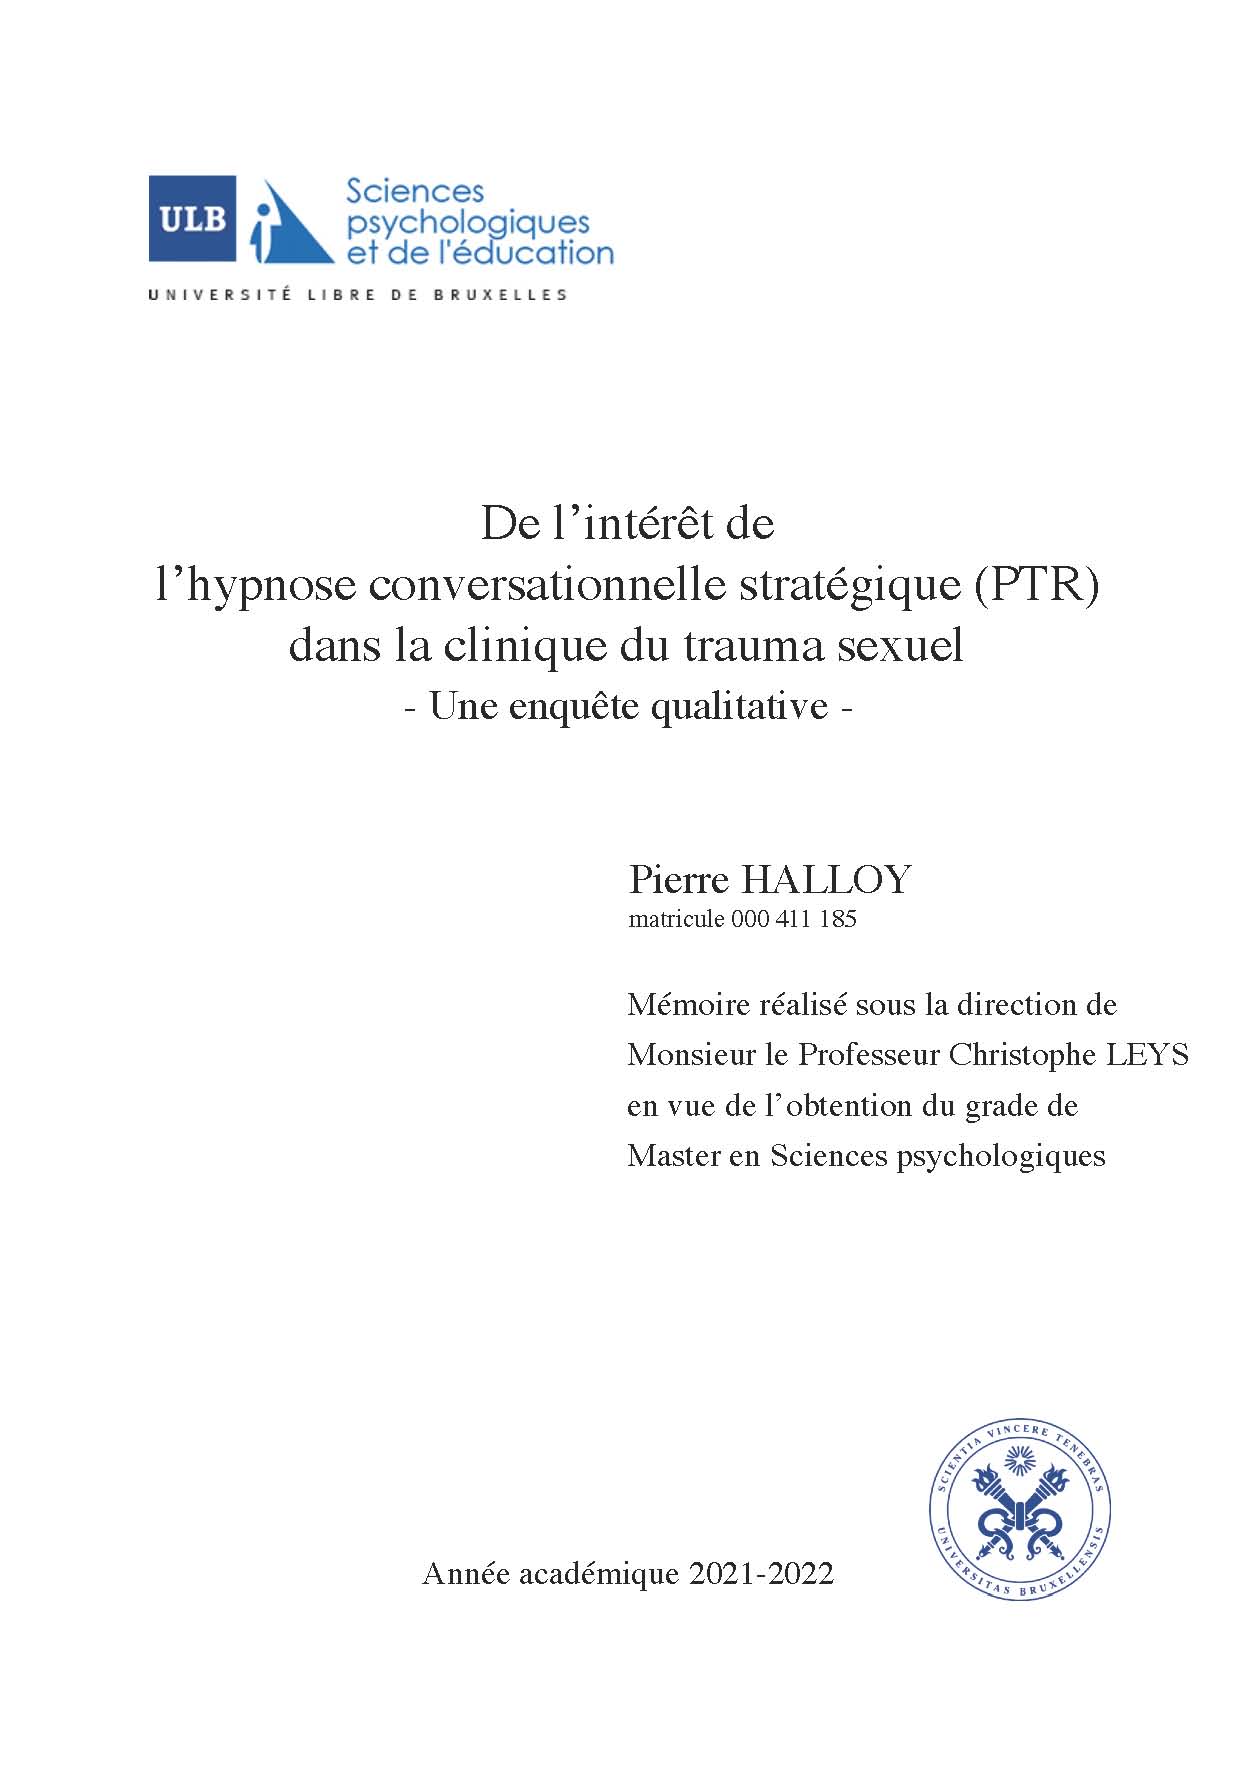 Mémoire de Pierre Halloy : "De l’intérêt de l’hypnose conversationnelle stratégique (PTR) dans la clinique du trauma sexuel"